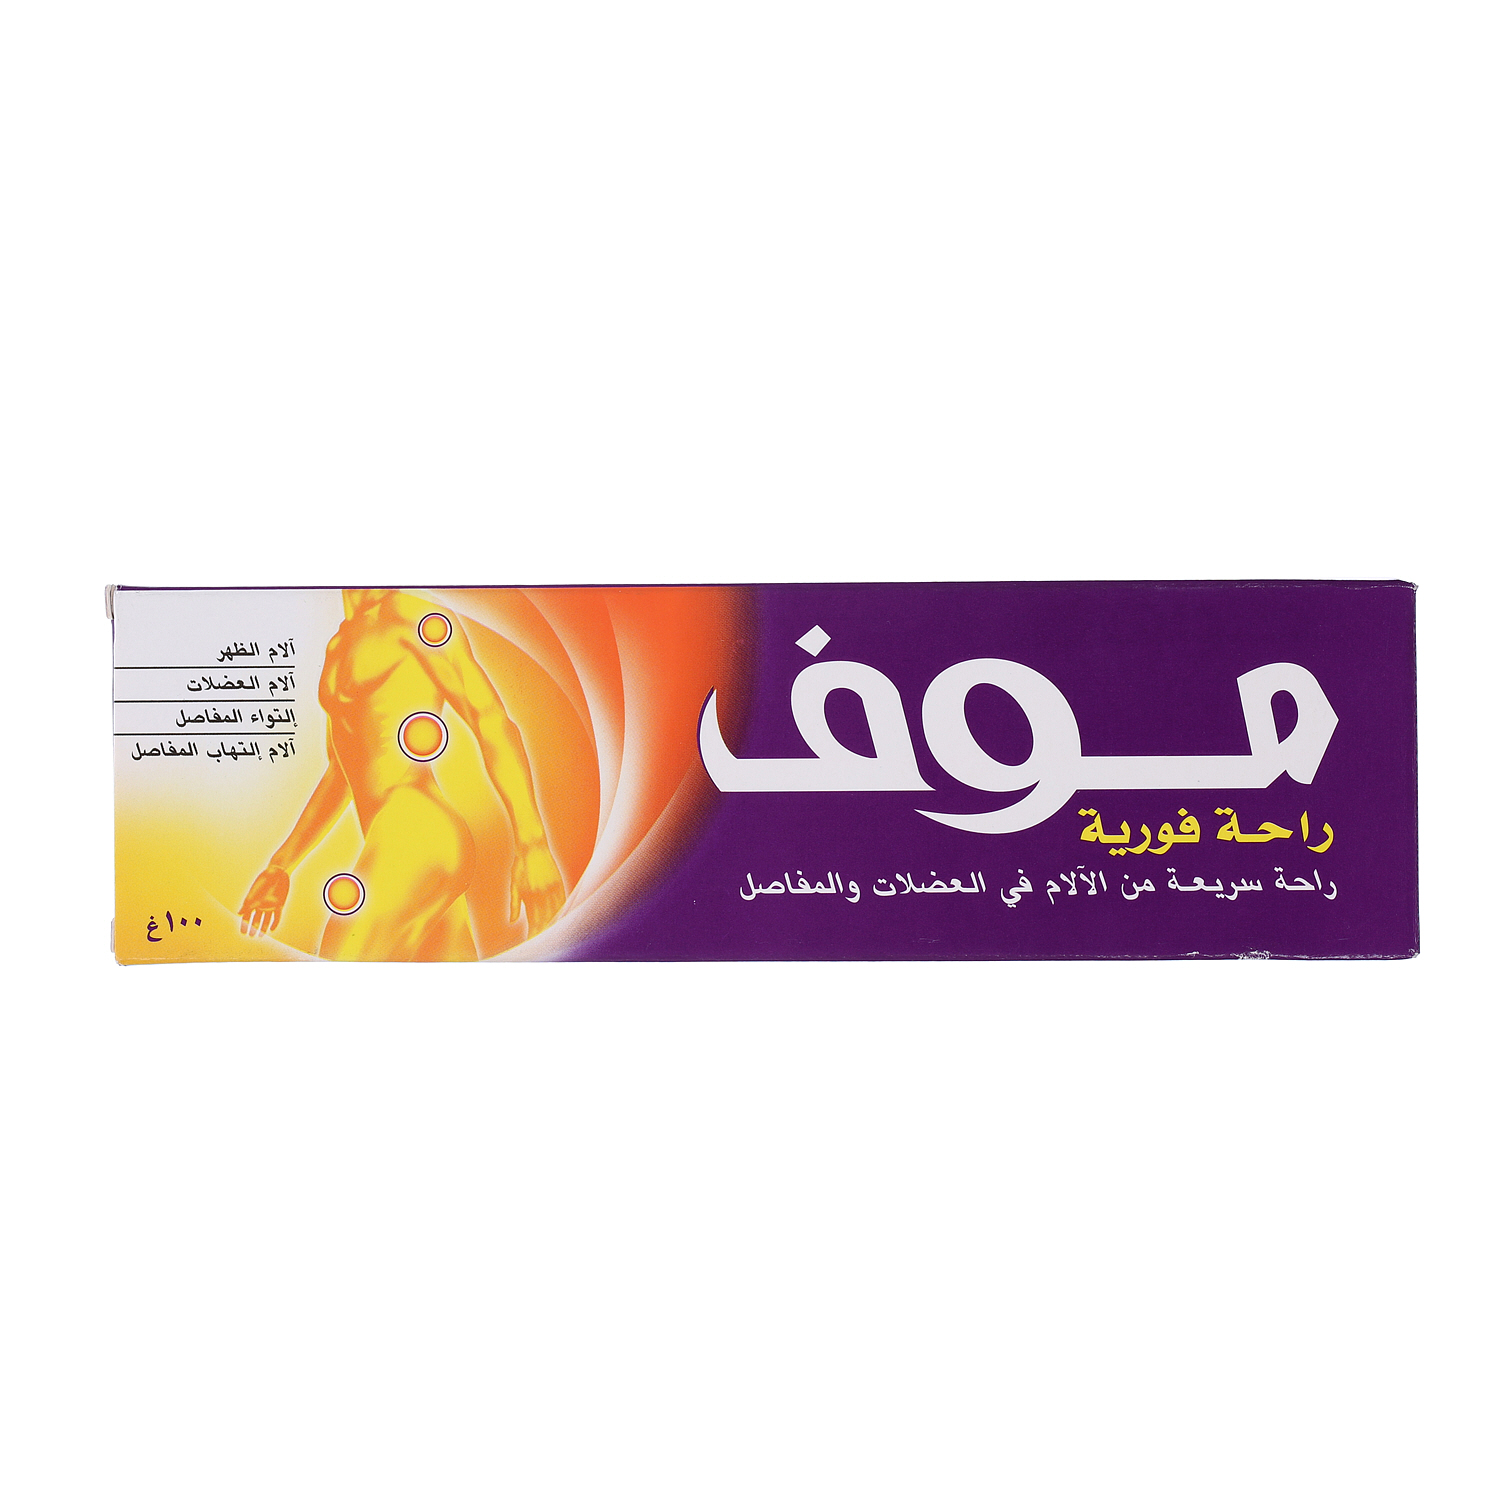 Moov Rapid Relief Cream 100 g